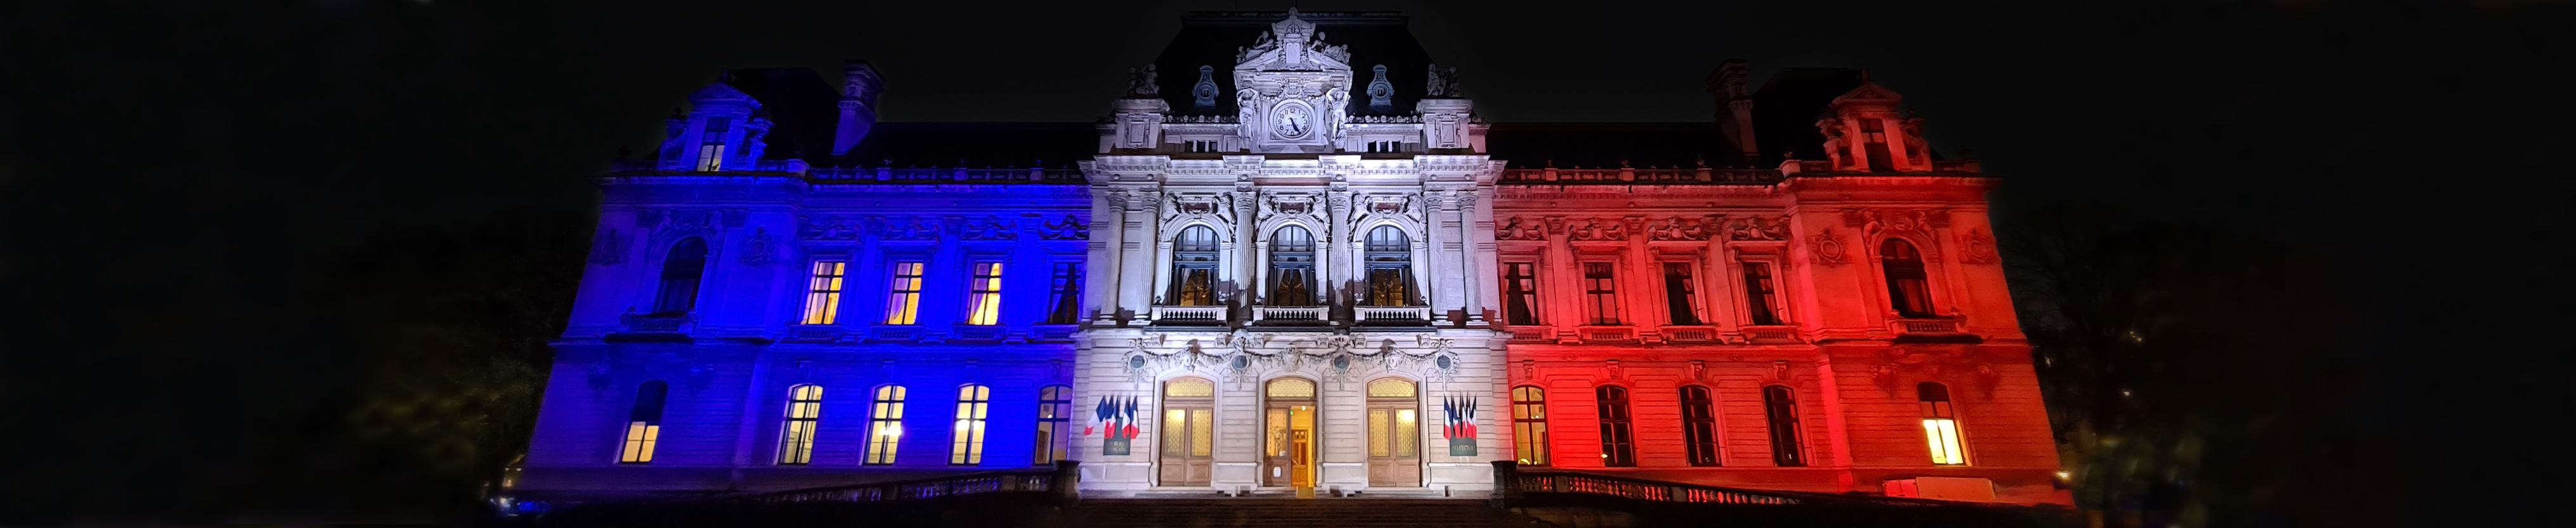 Eclairage département du Rhône pour la fête des lumières